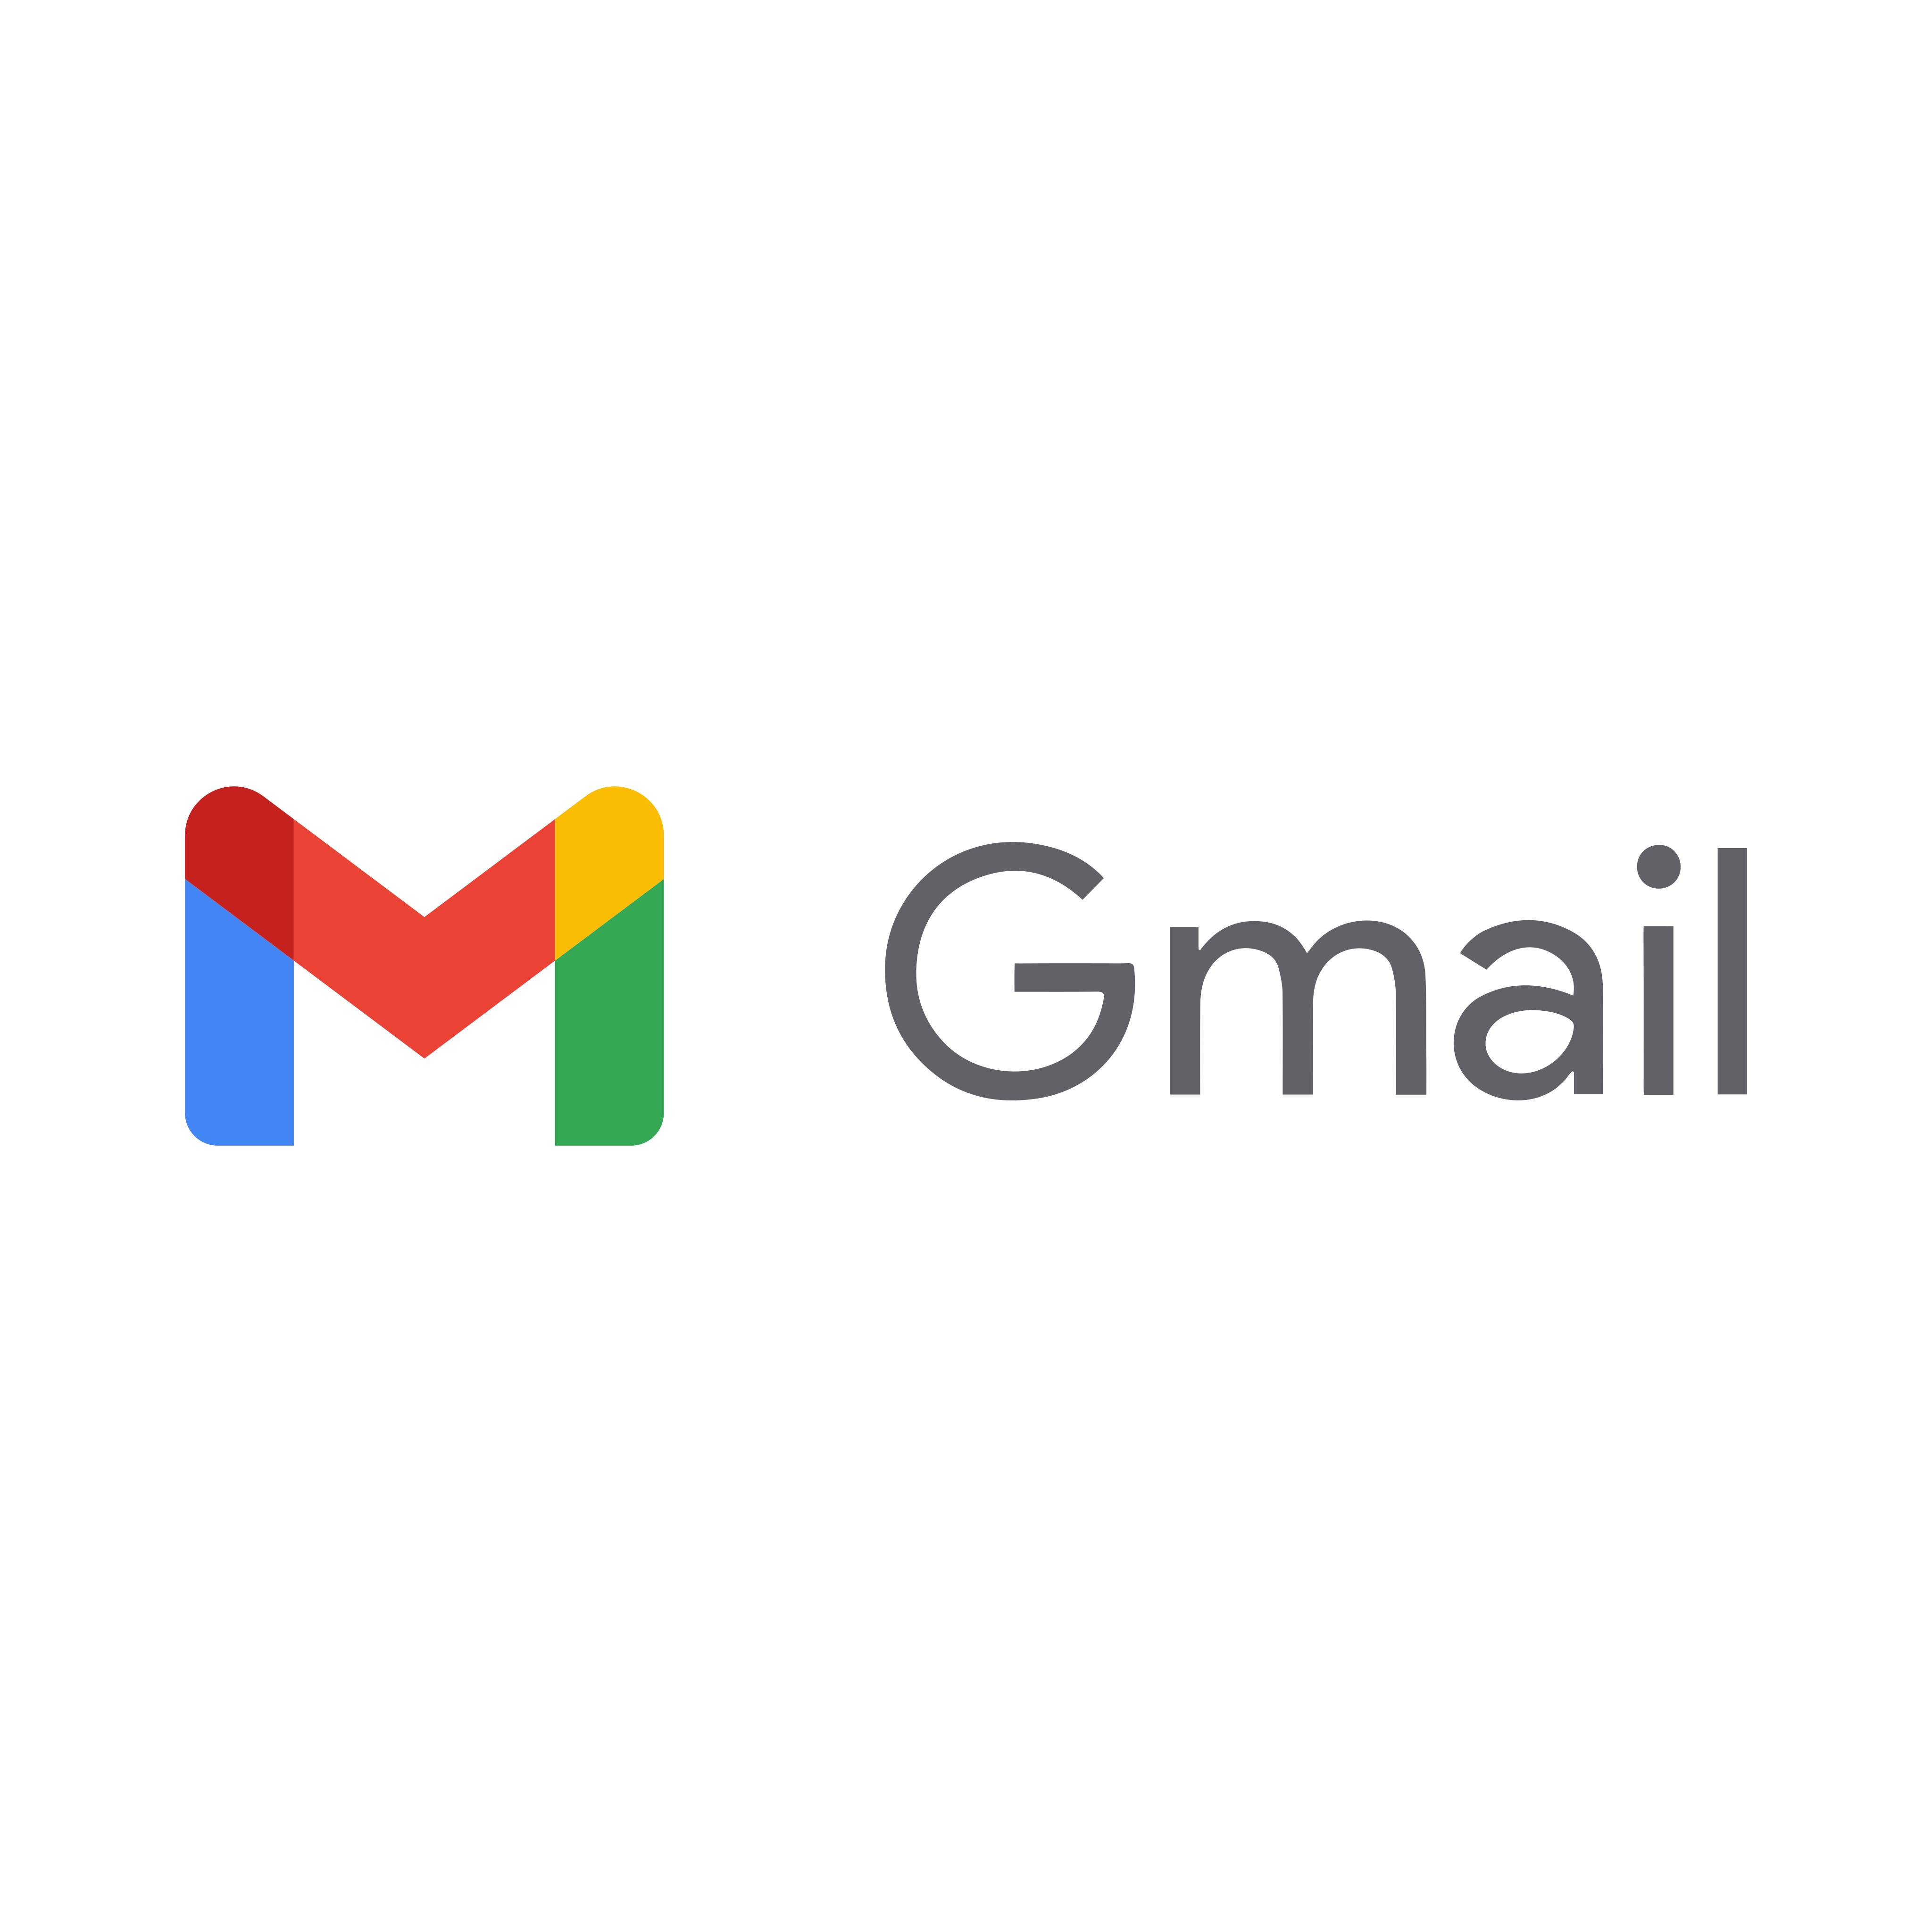 谷歌在Gmail侧边栏推出Gemini智能助手功能 可帮写邮件和提取信息